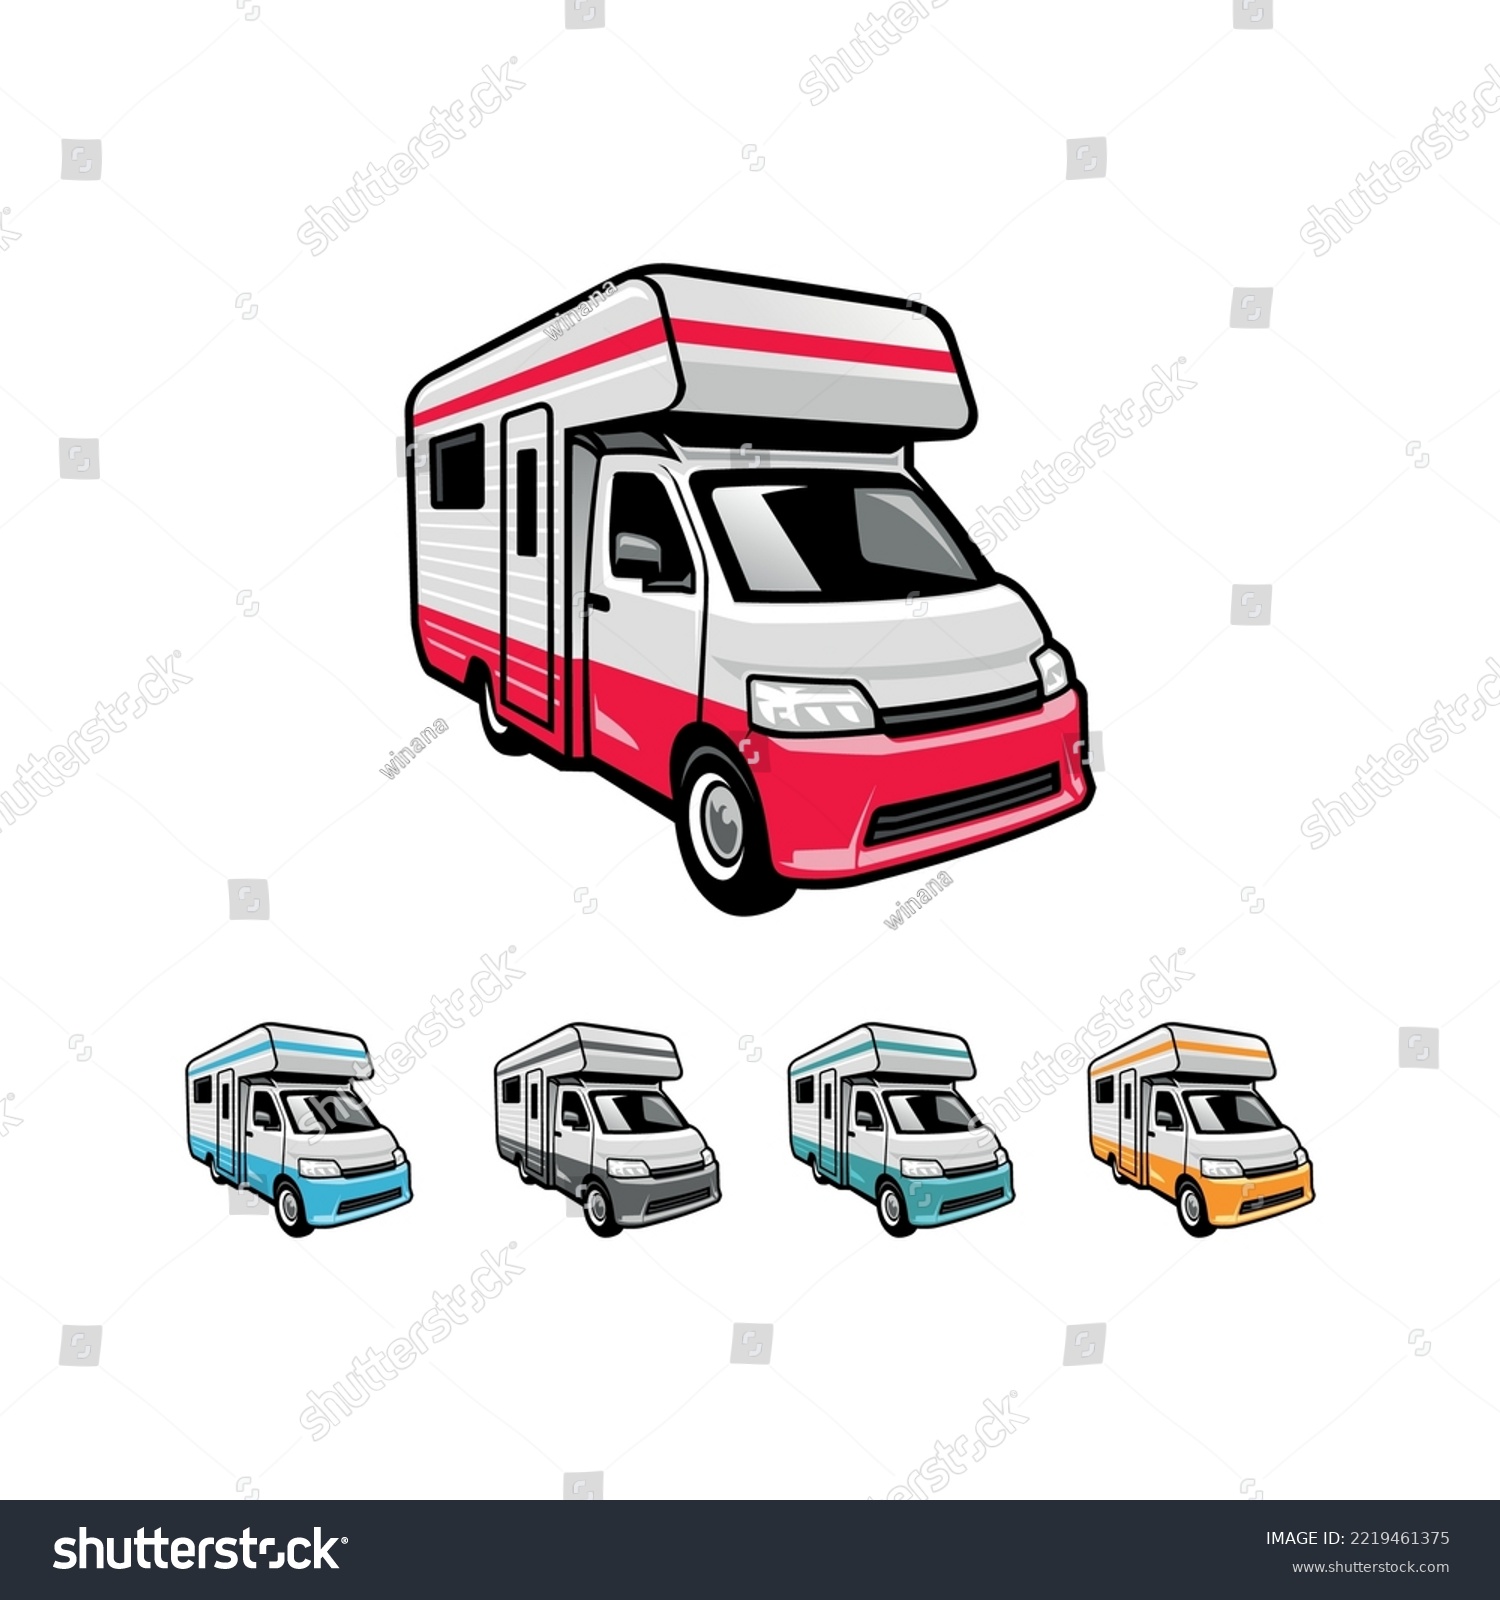 SVG of RV, camping car, campervan illustration logo vector svg